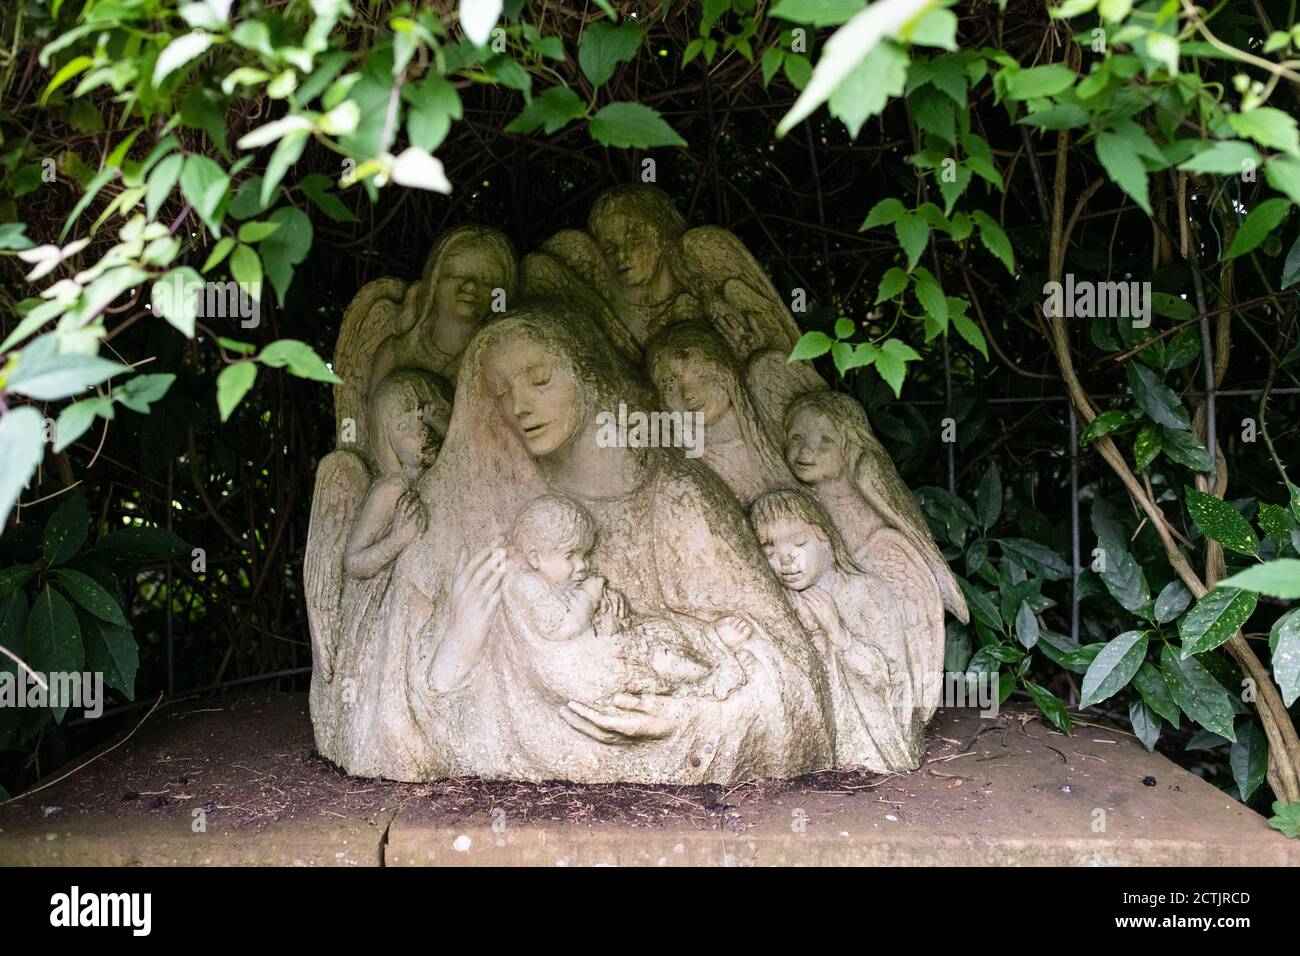 Adoración de la escultura de los Santos inocentes por Josefina de Vasconcellos en el Jardín del Niño durmiente, Iglesia del Priorato de San Bees, San Bees, Cumbria, Inglaterra Foto de stock